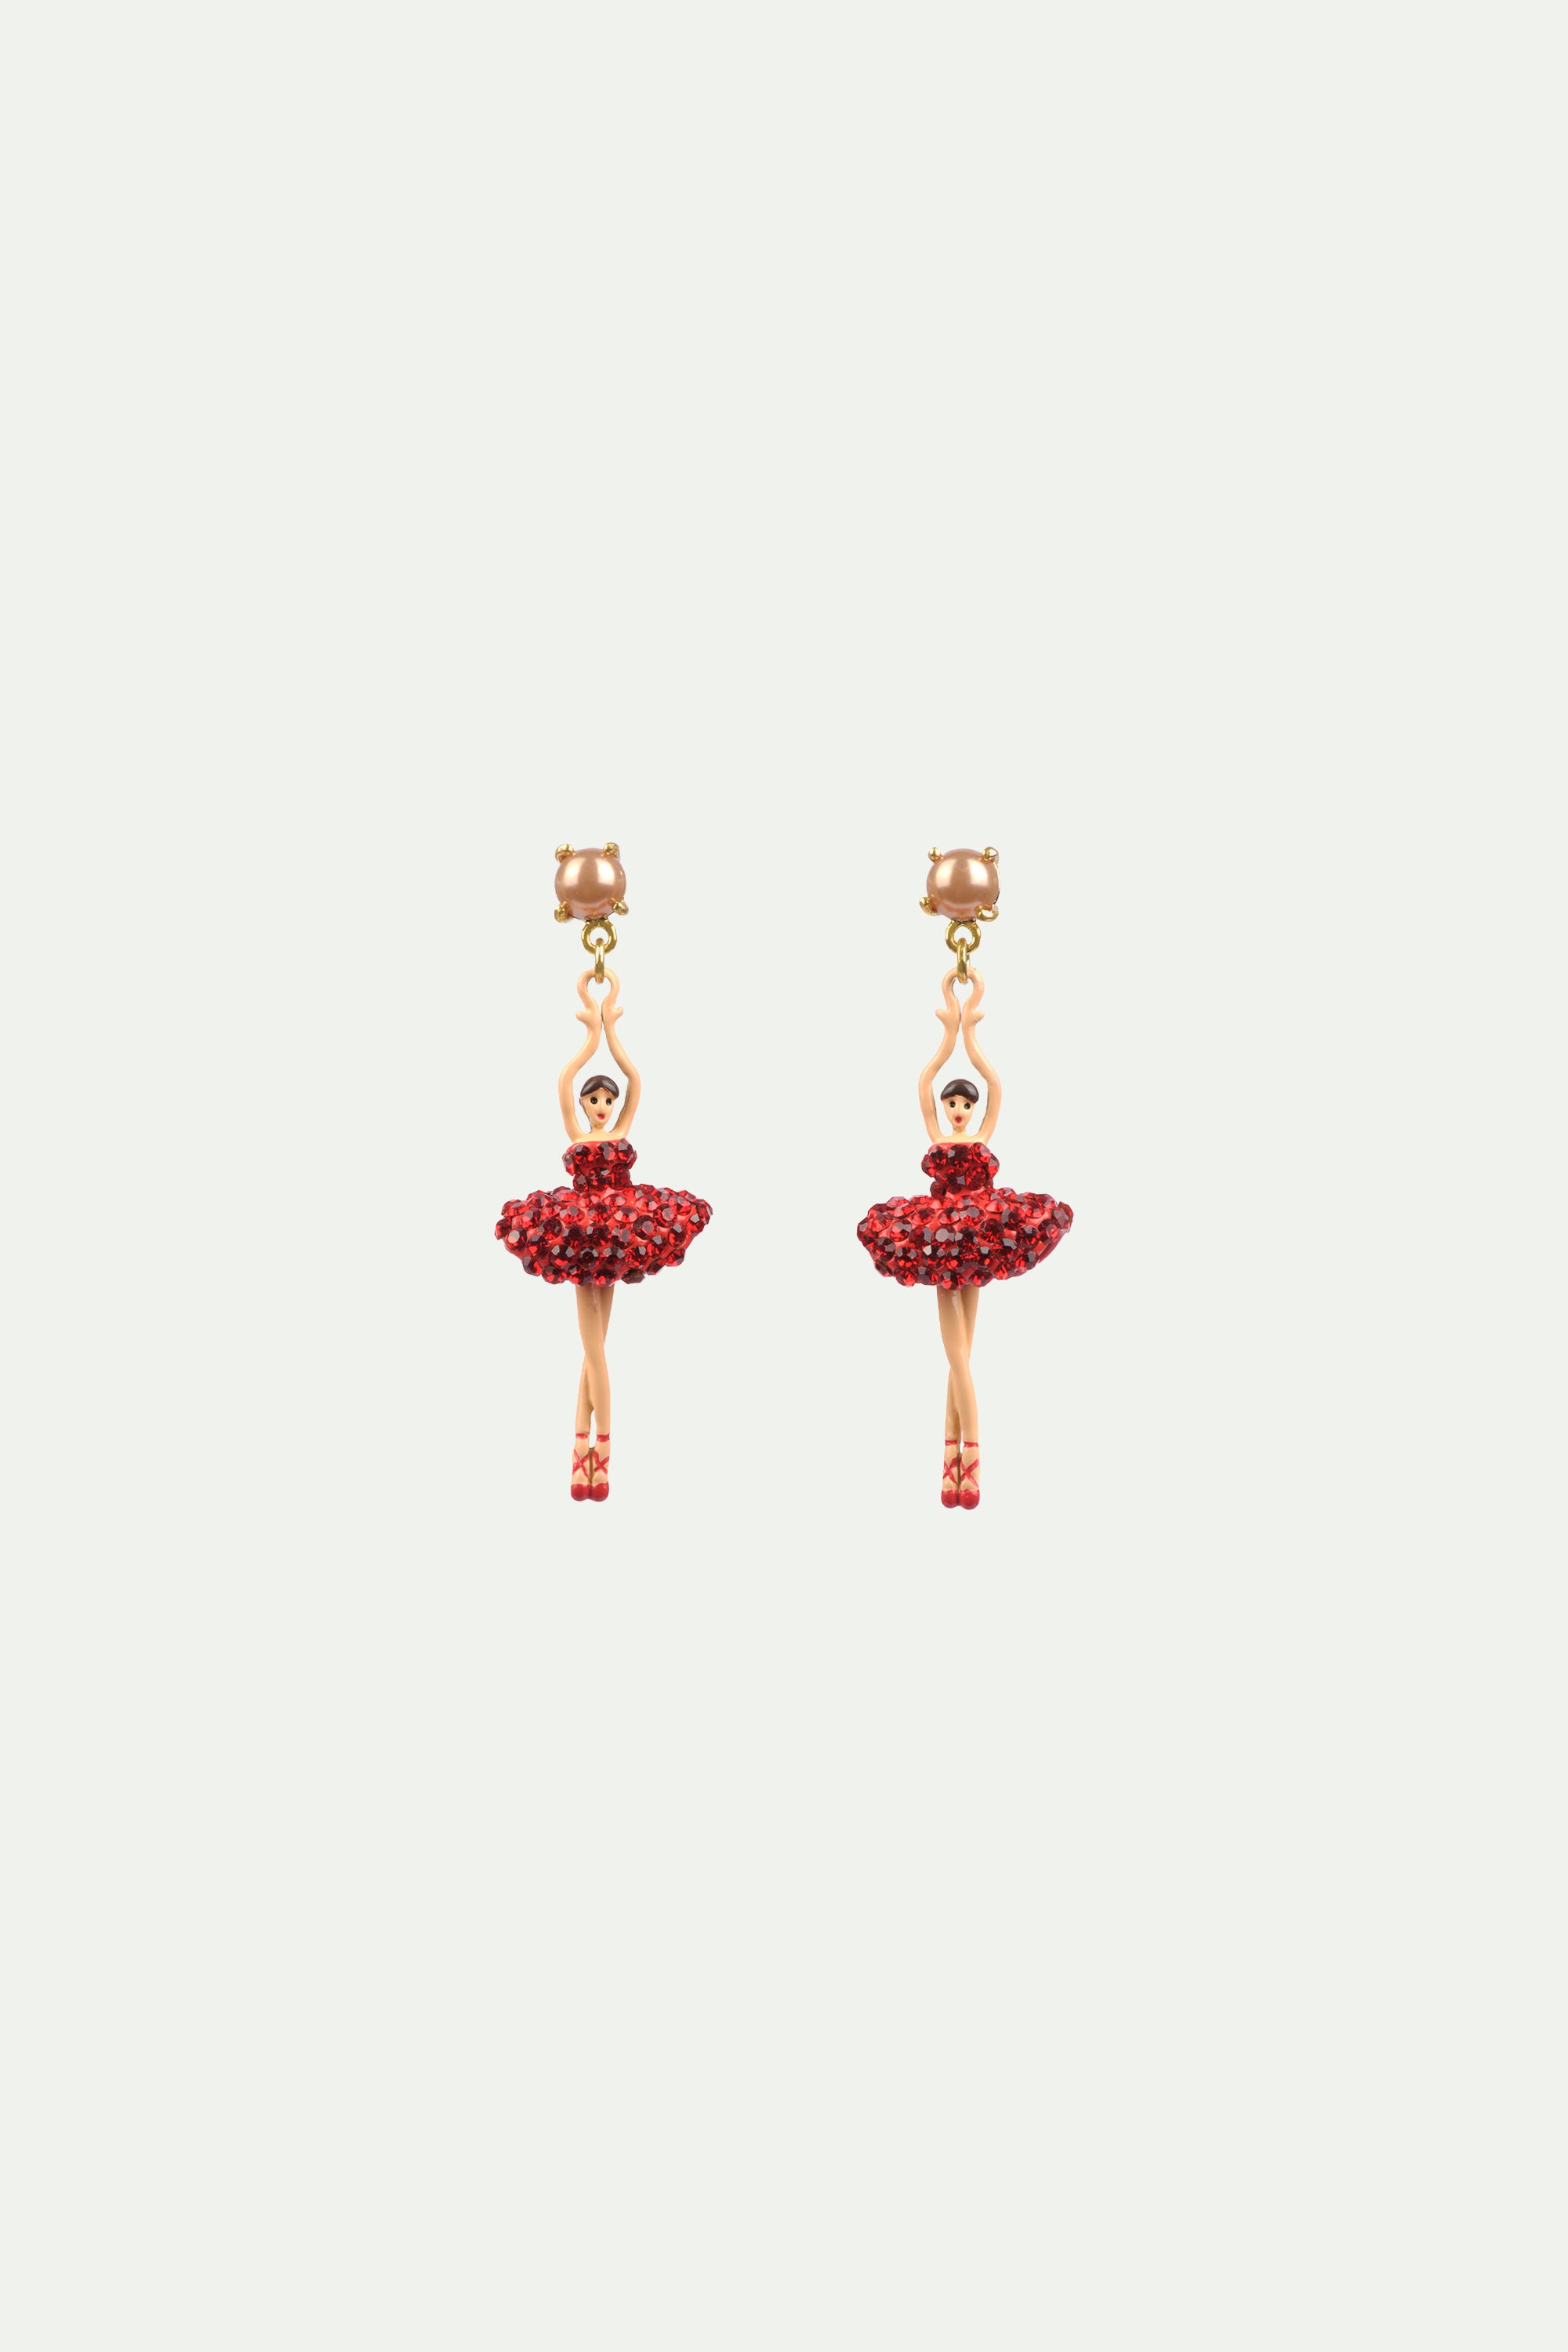 Pendientes de clip bailarina en puntillas con su tutú pavimentado de strass rojos